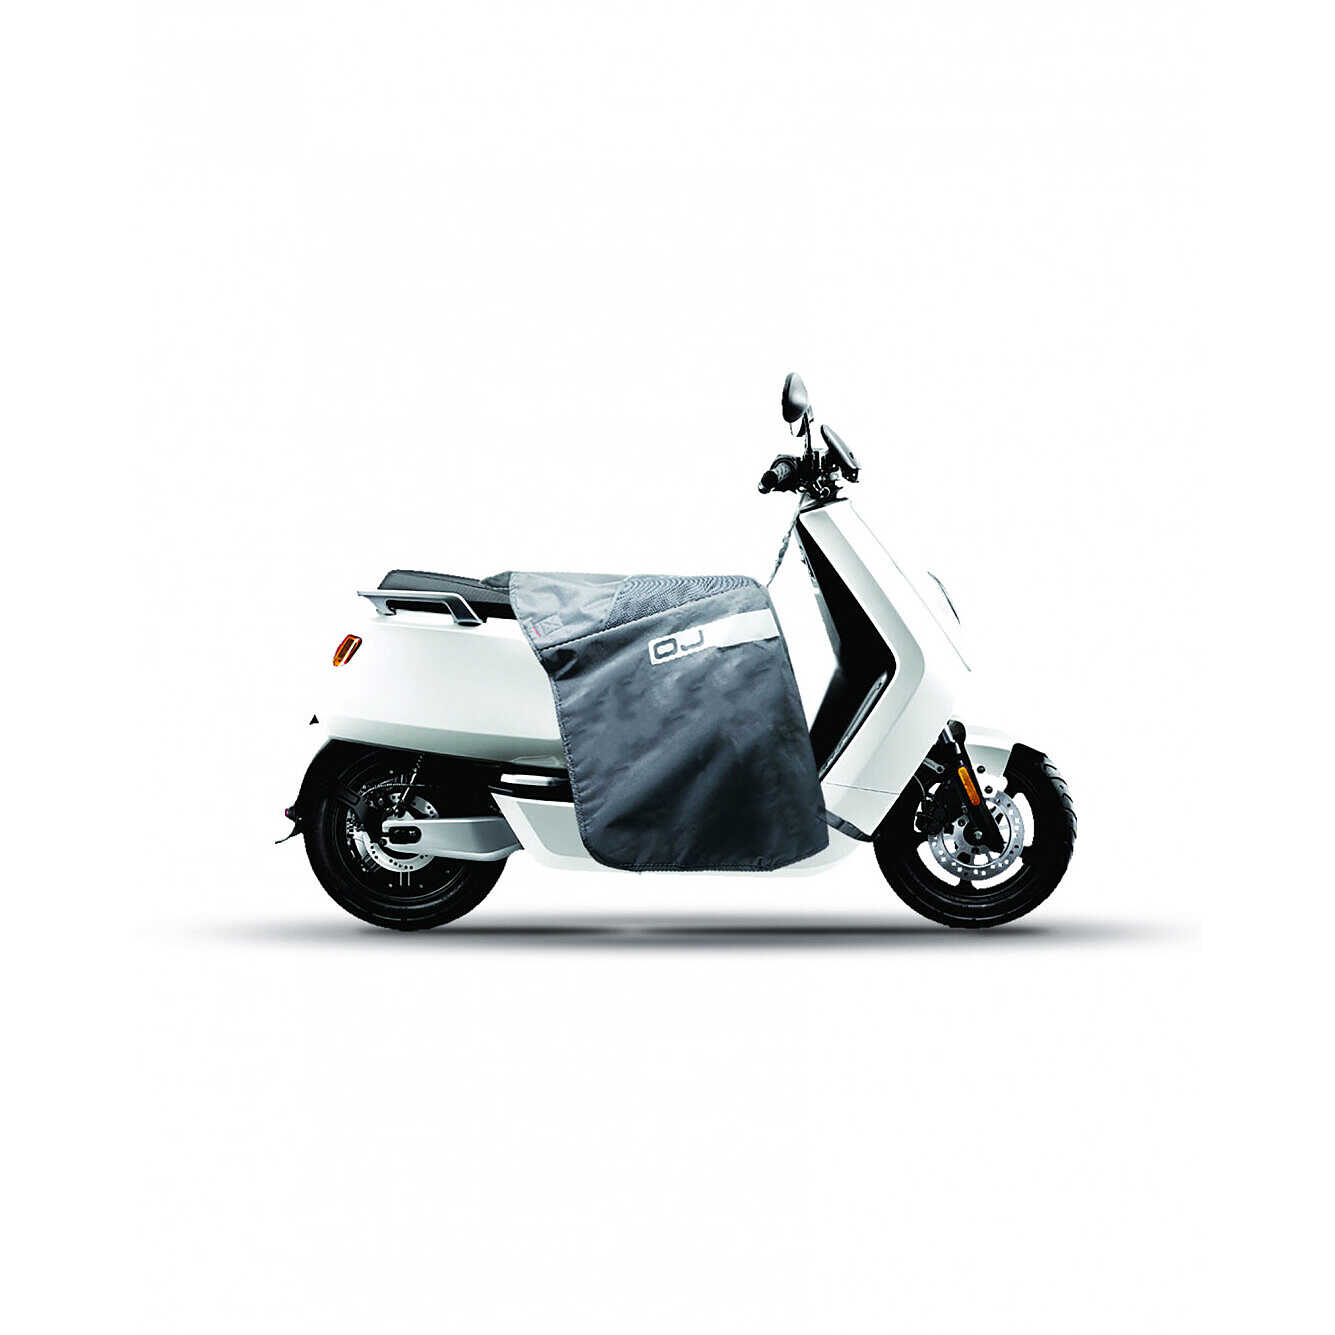 Coprigambe per scooter OJ Pro-Leg modello A universale per ruote basse -  139